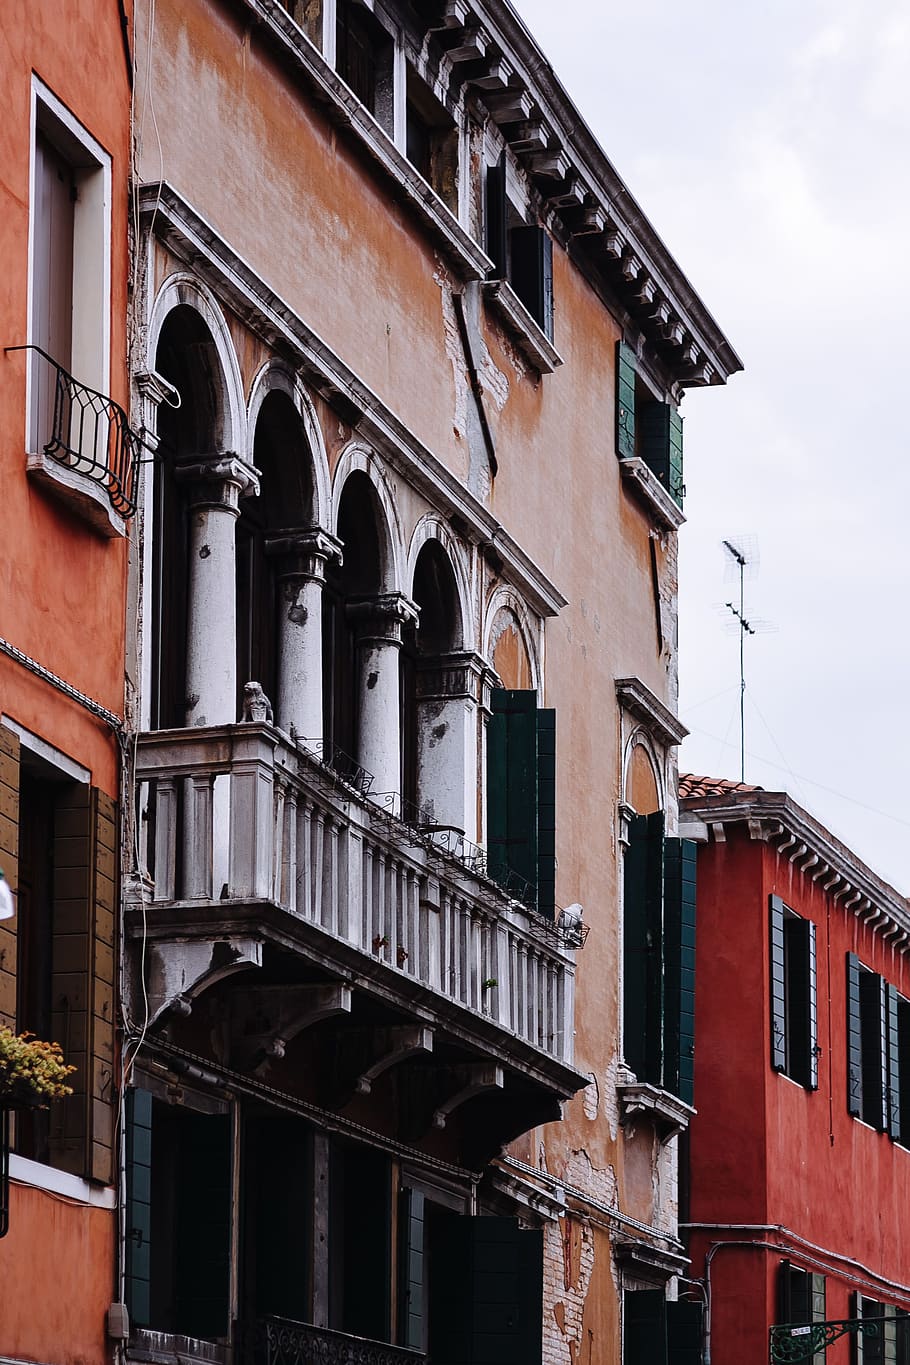 vacaciones, arquitectura, edificios, casco antiguo, europa, viajes, italiano, italia, veneto, venezia